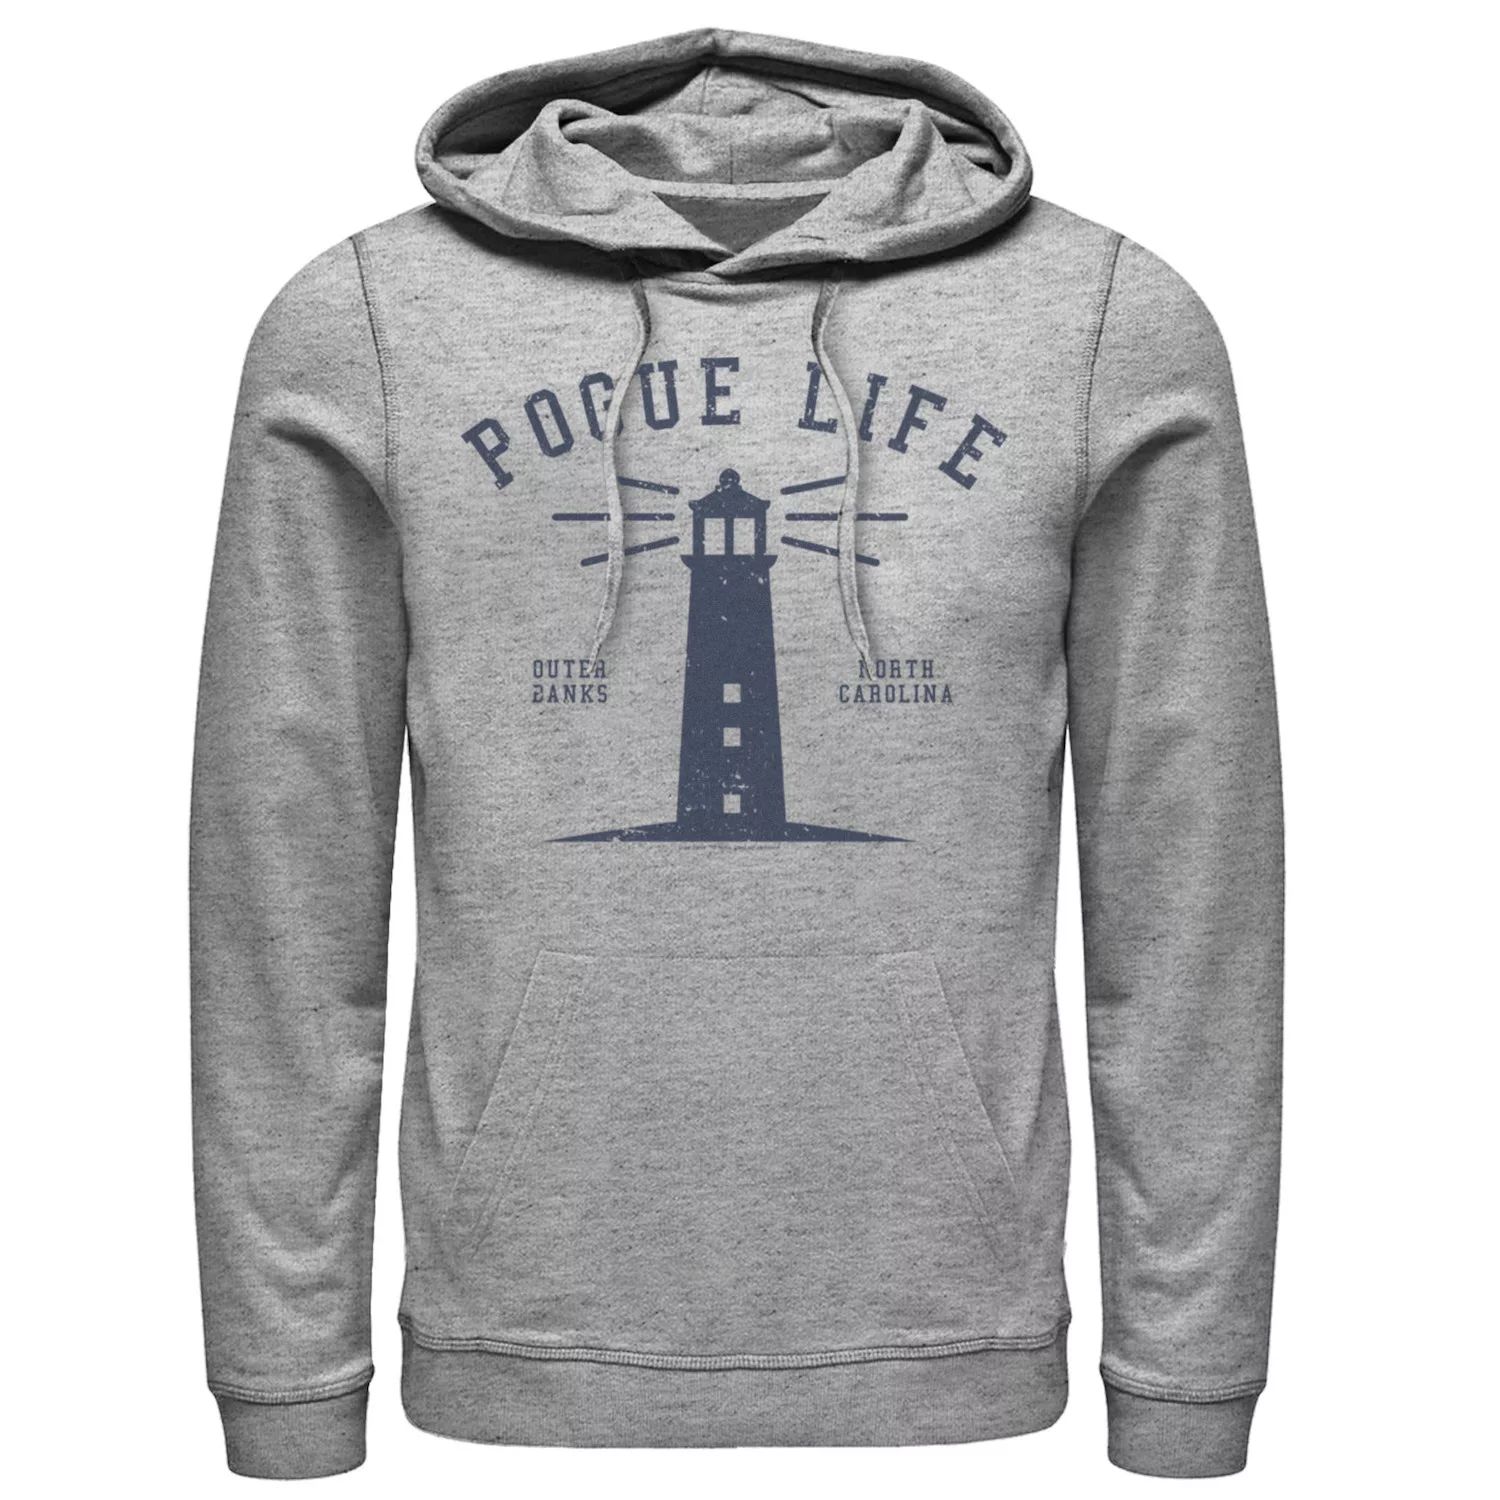 Мужская толстовка с капюшоном Outer Banks Pogue Life Lighthouse Licensed Character мужская футболка outer banks pogue life lighthouse licensed character